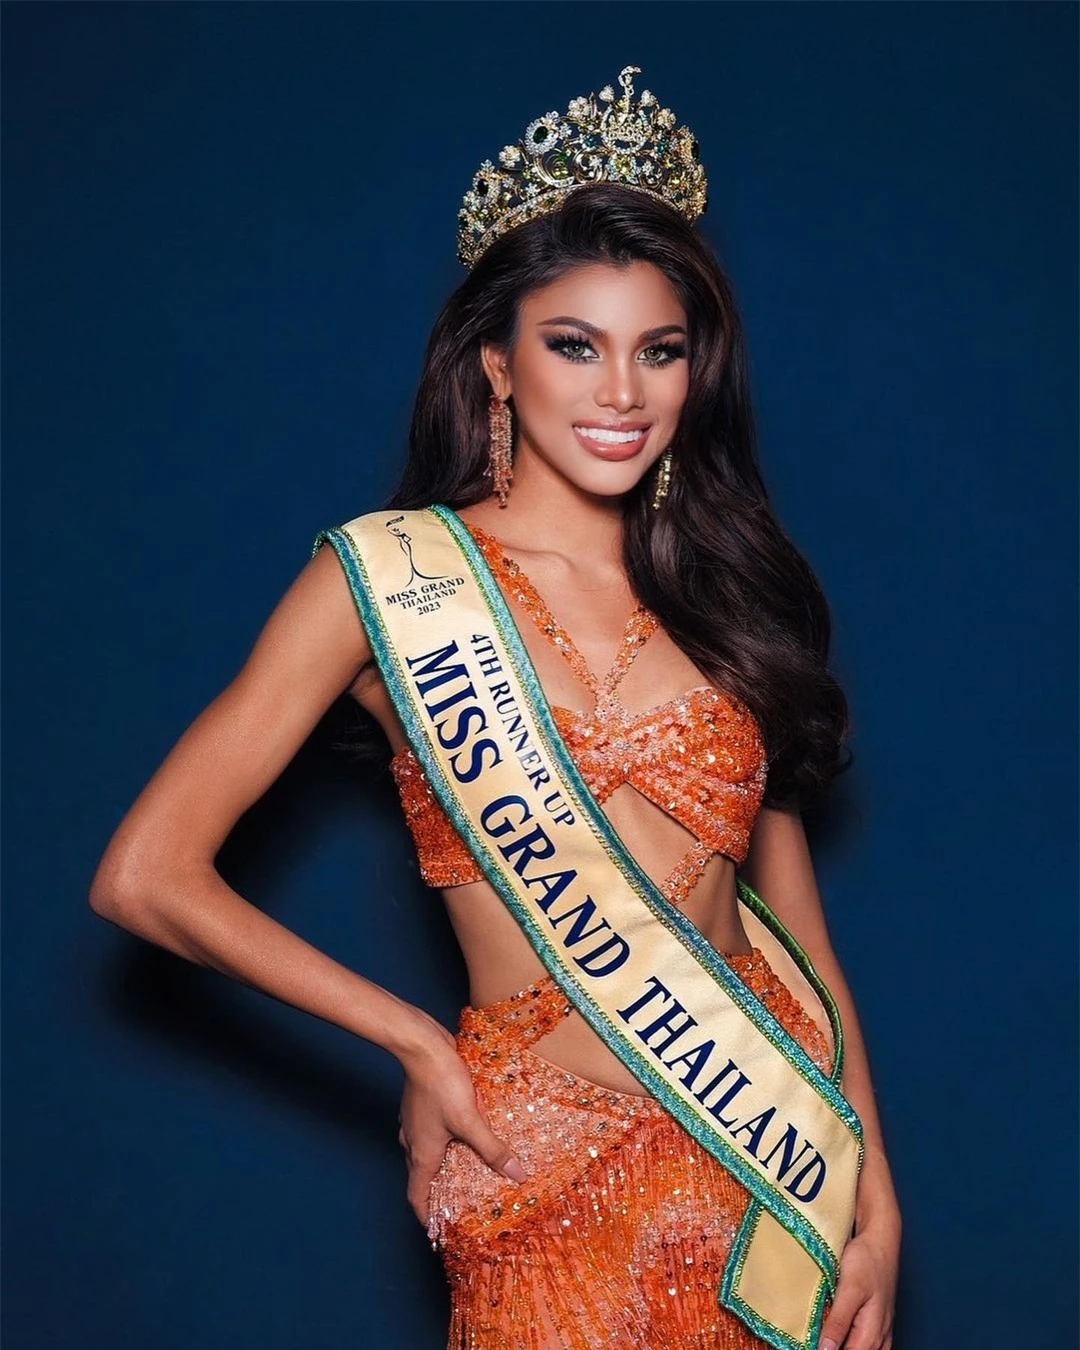 Á hậu Hòa bình Thái Lan đăng quang cuộc thi sắc đẹp quốc tế ảnh 4